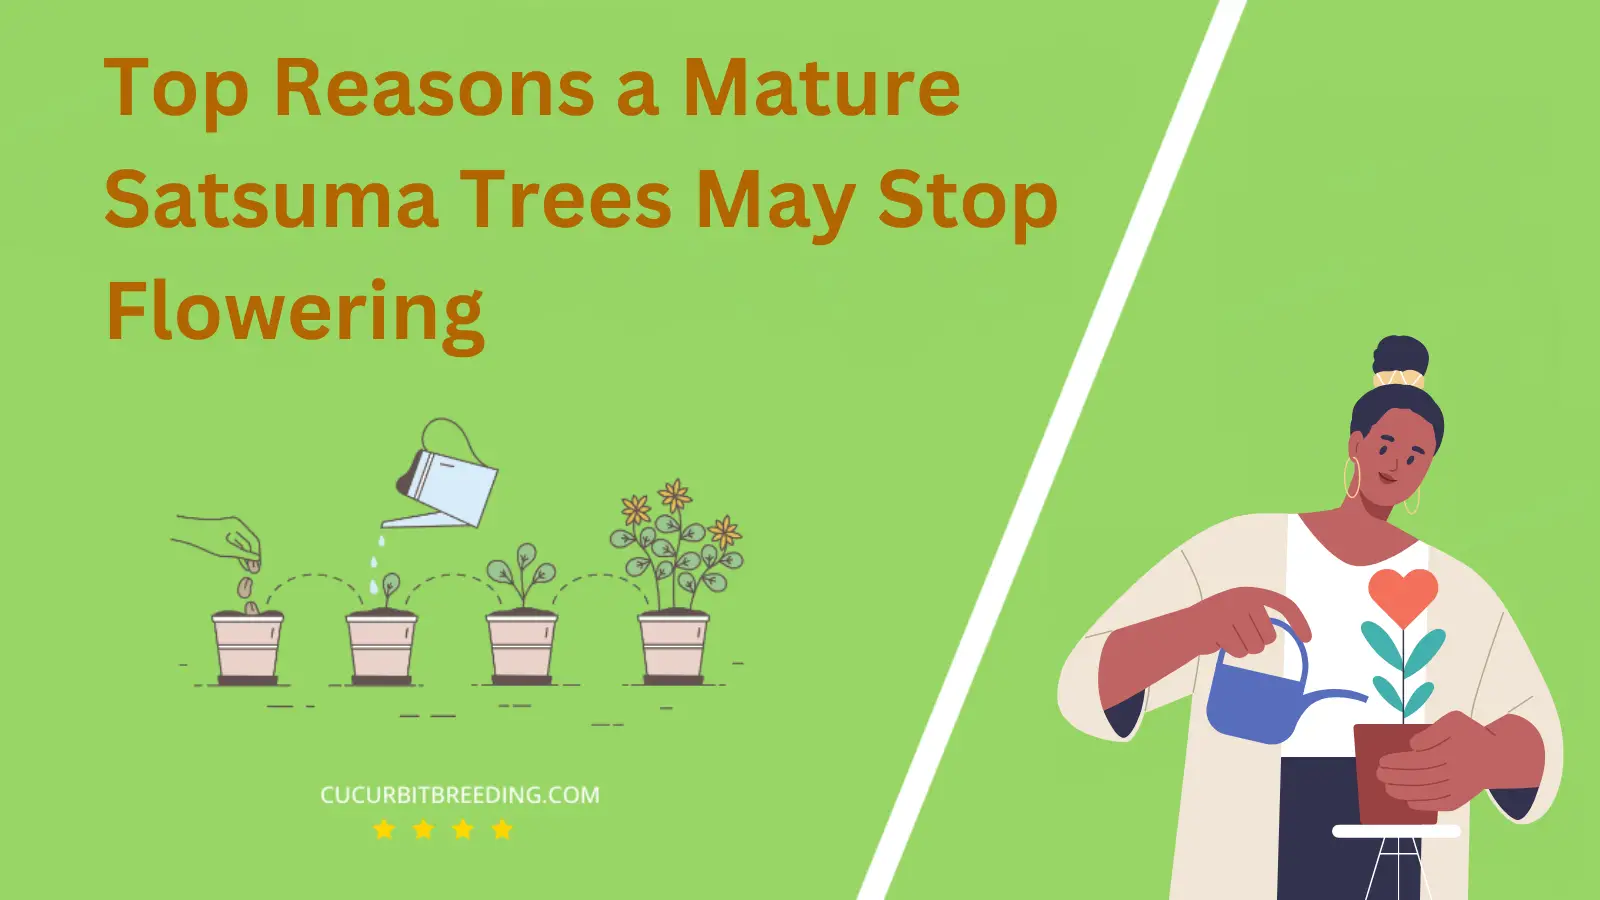 Top Reasons a Mature Satsuma Trees May Stop Flowering